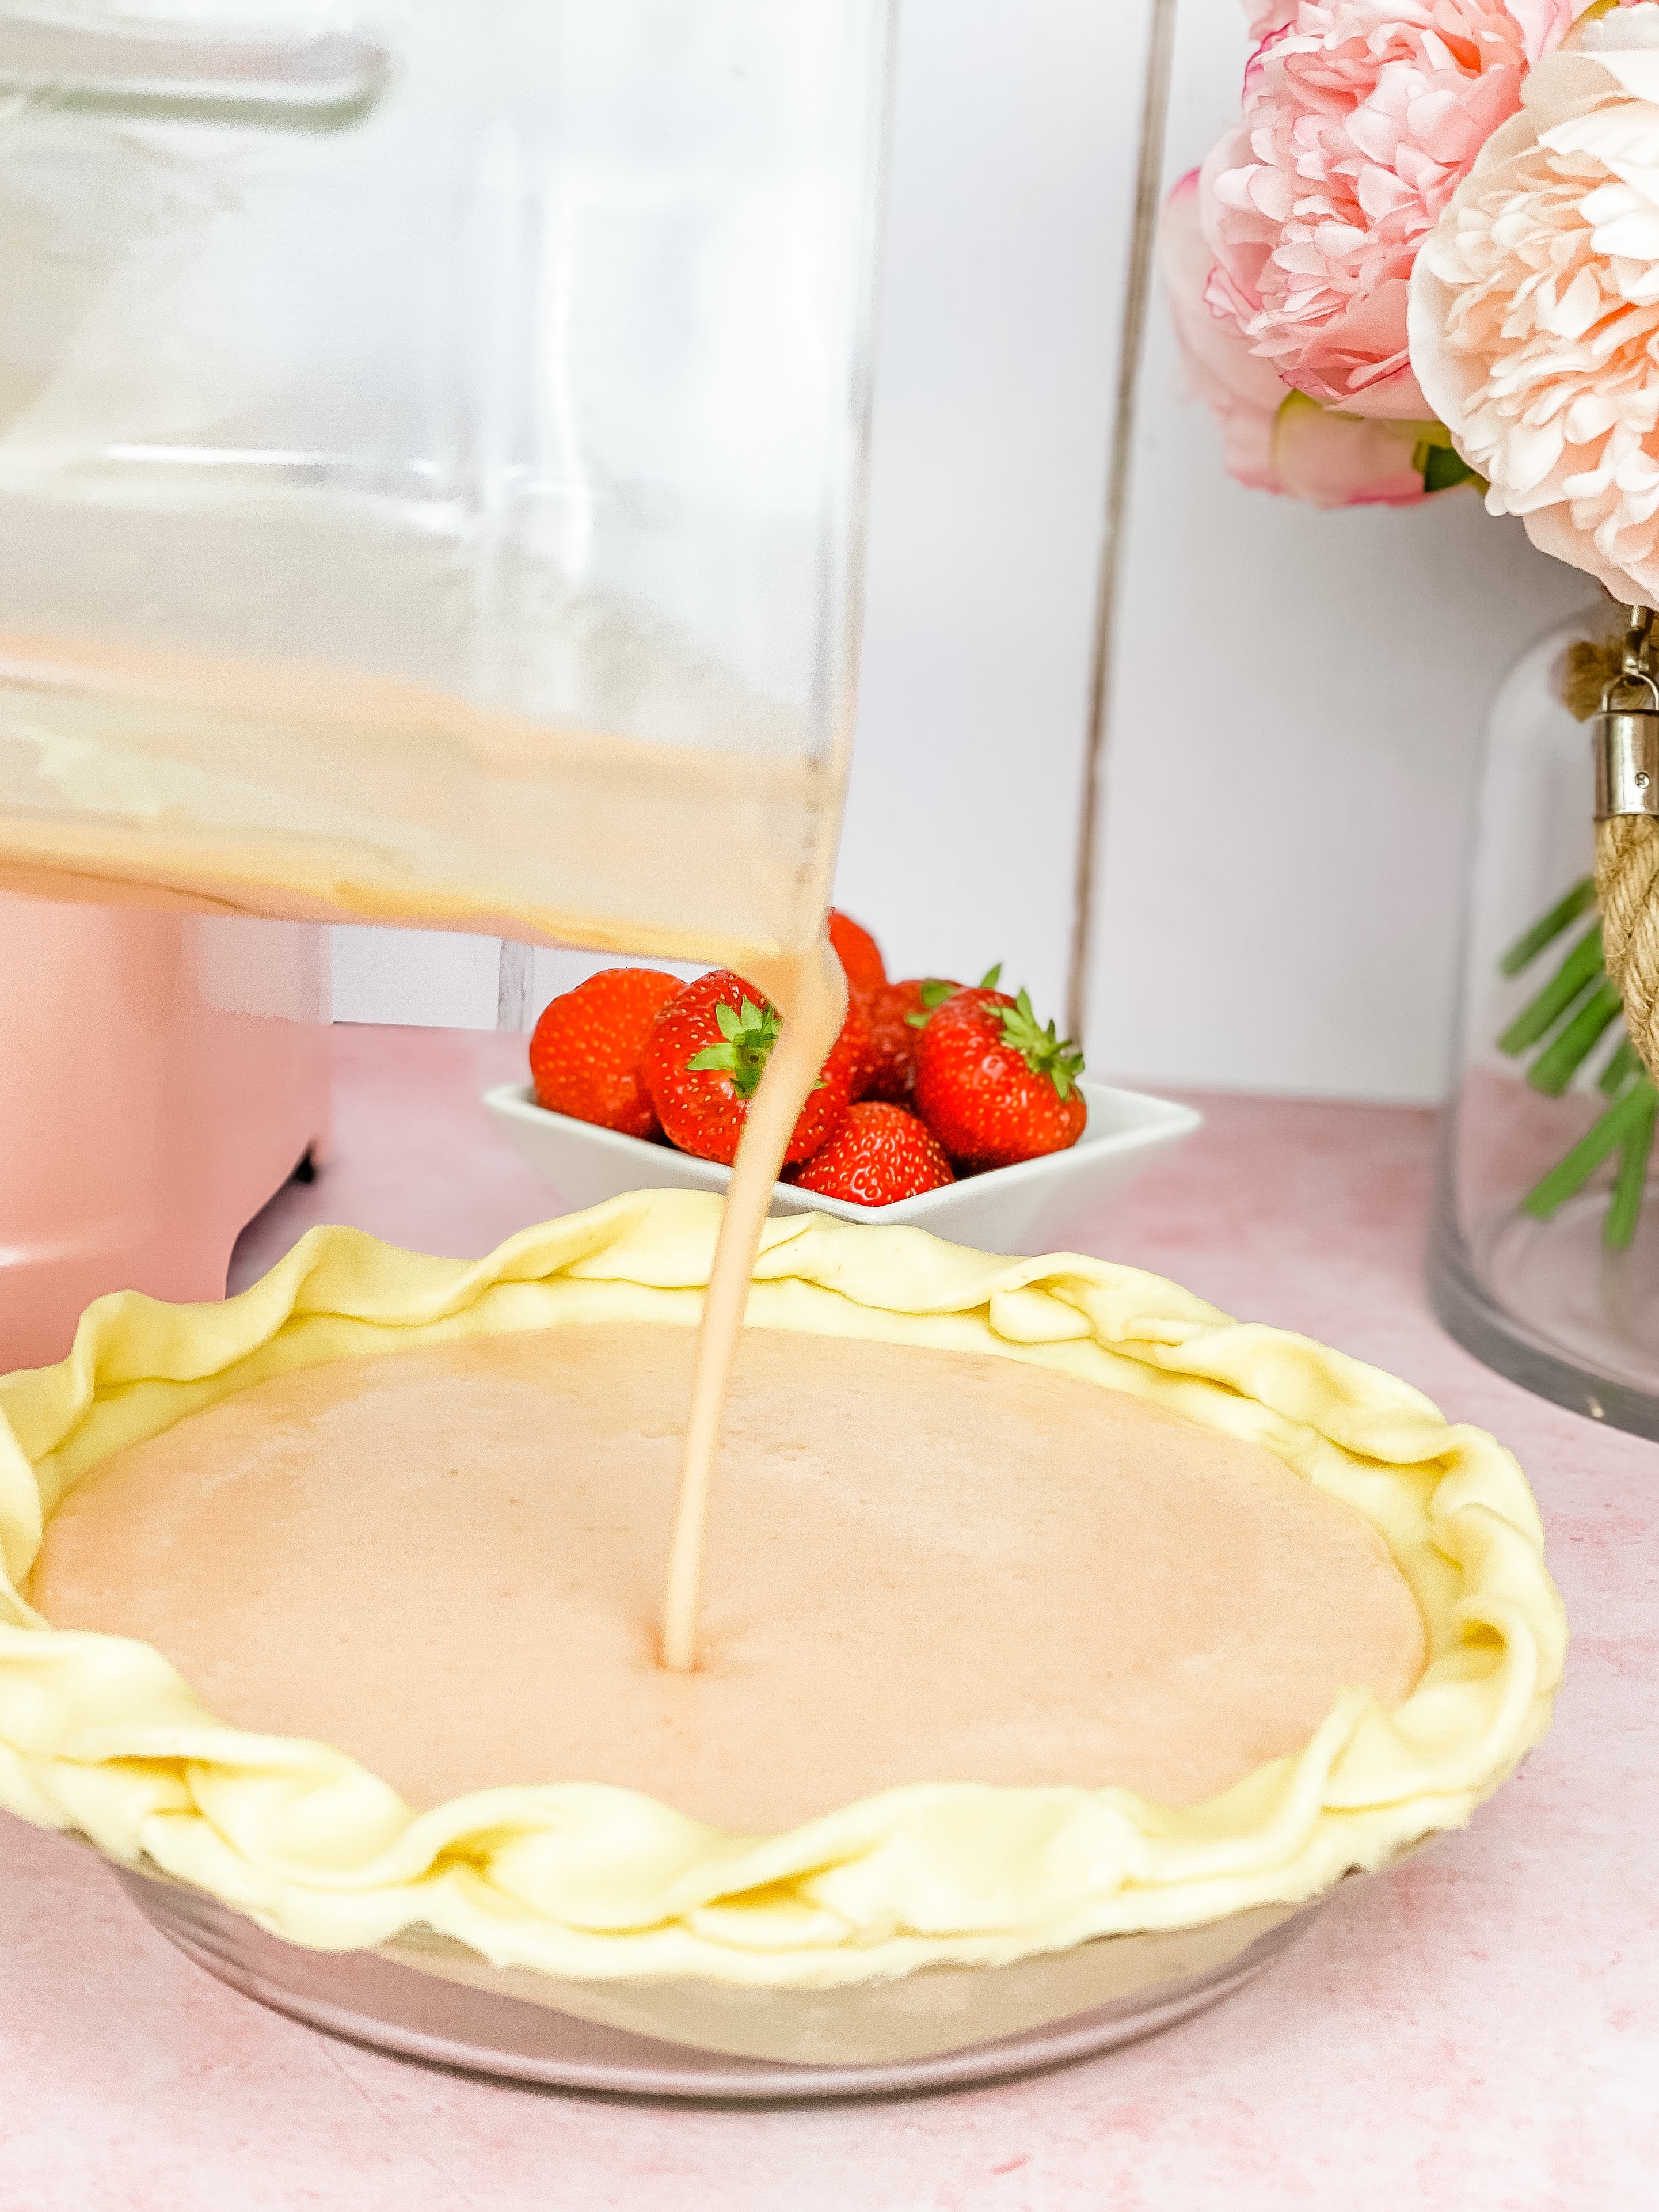 Blender Strawberry Lemon Pie Recipe